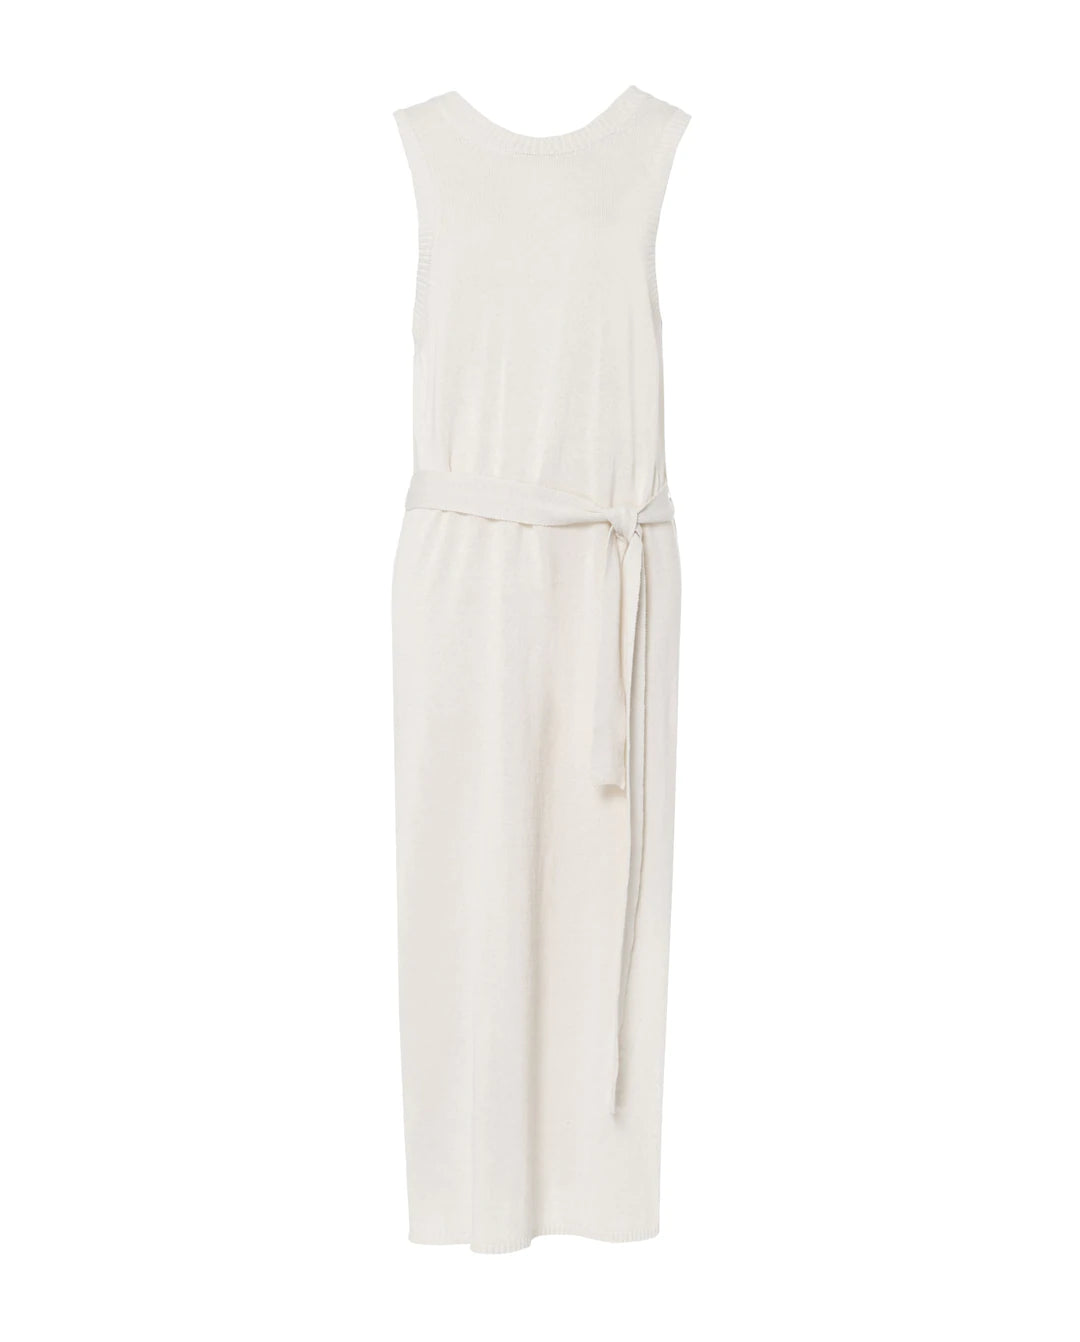 Kim Knit Dress in almond white